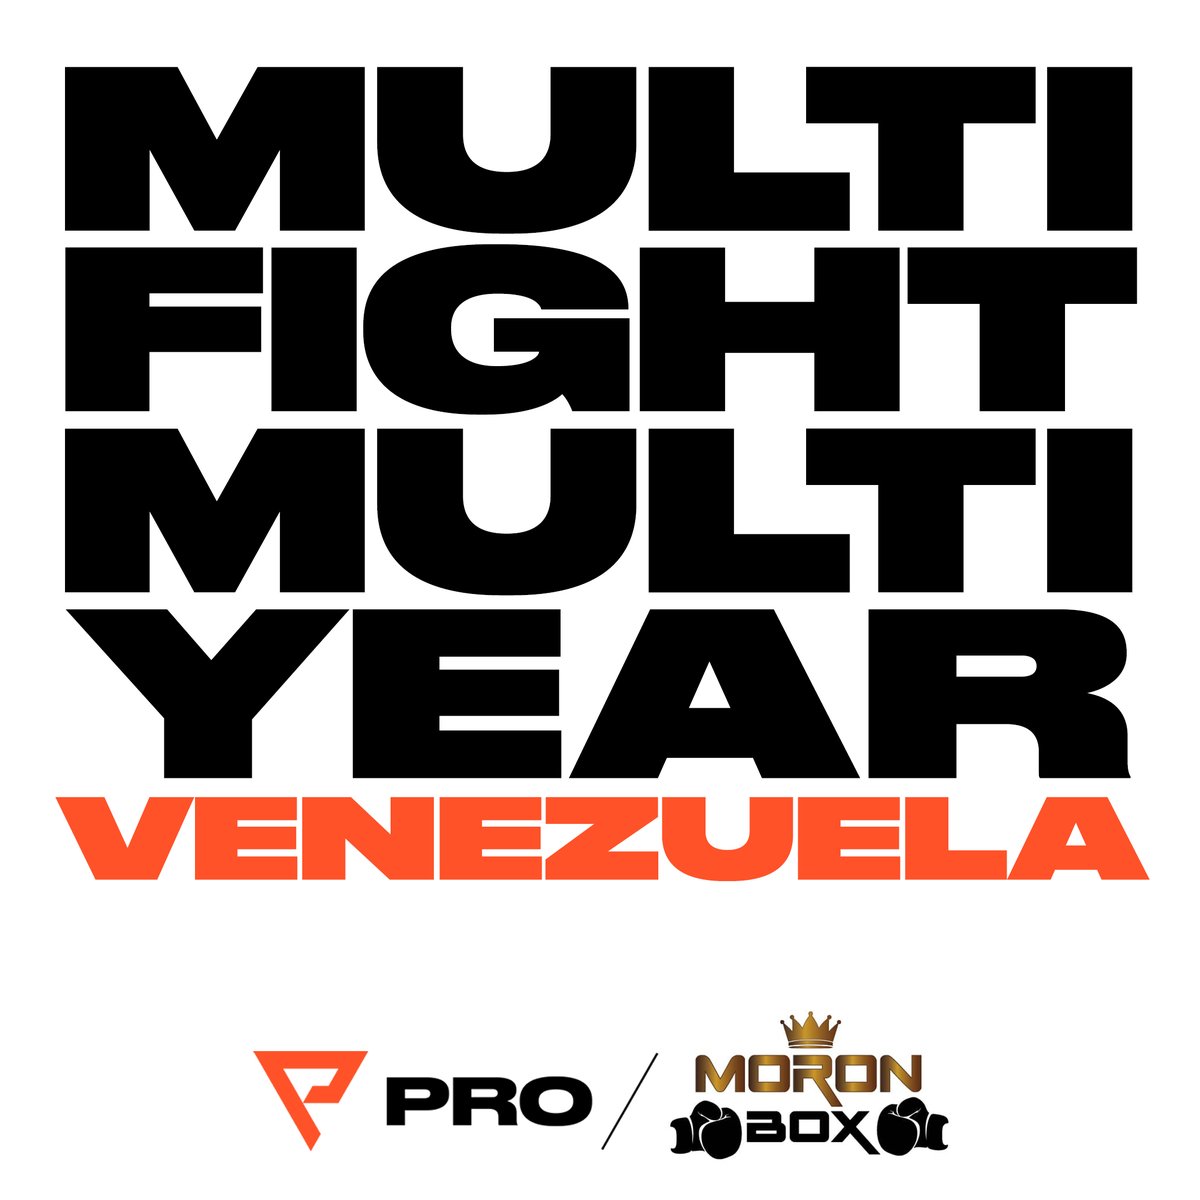 Moron Boxing de Venezuela se suma a Probellum